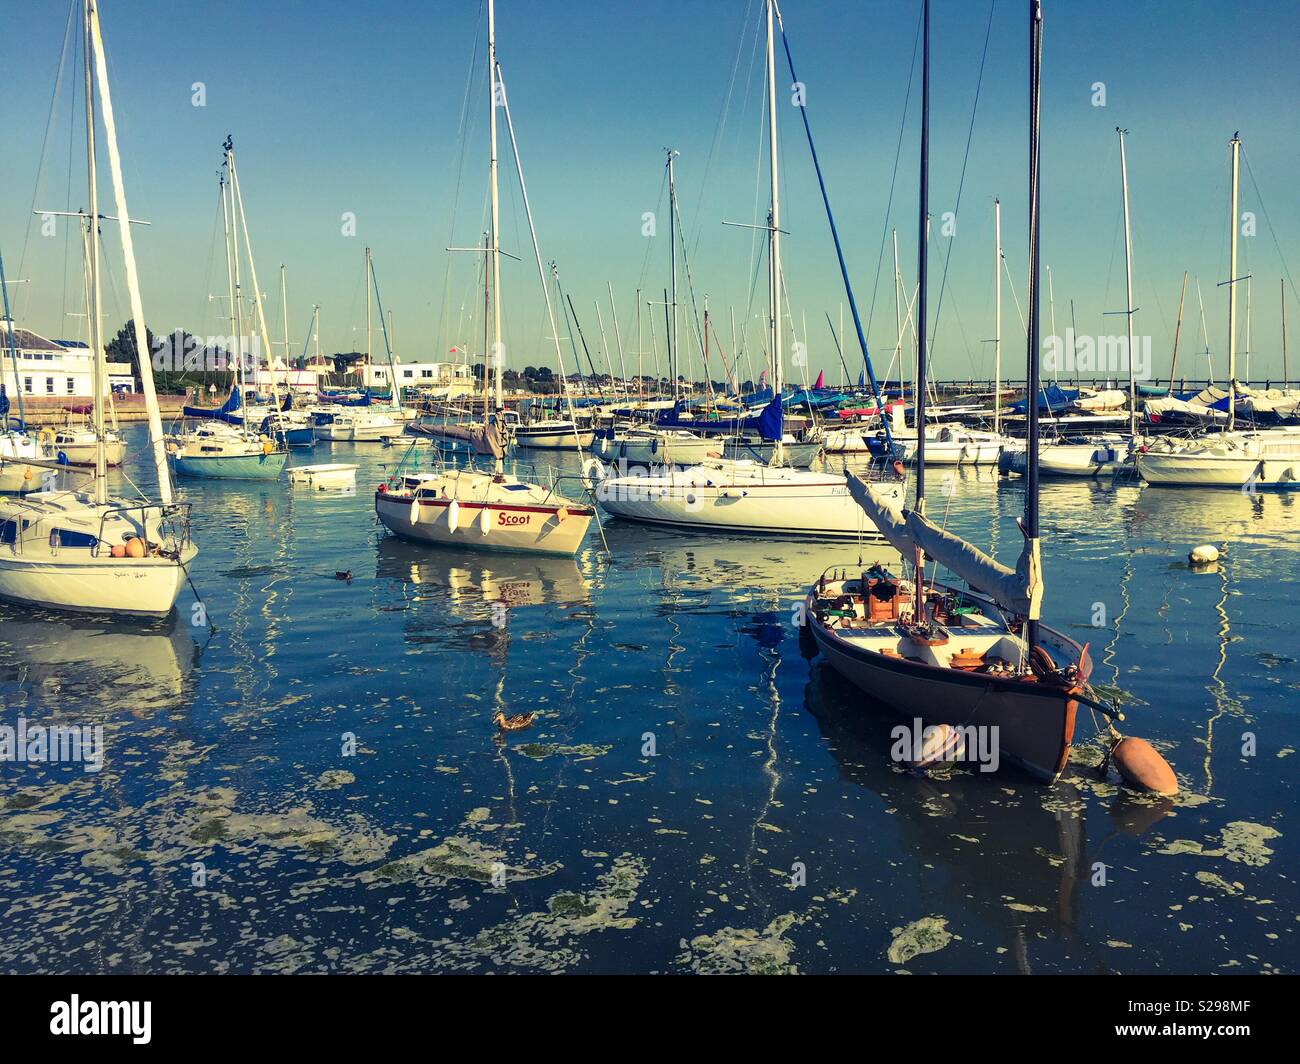 Boats in Marina on a sunny day Stock Photo